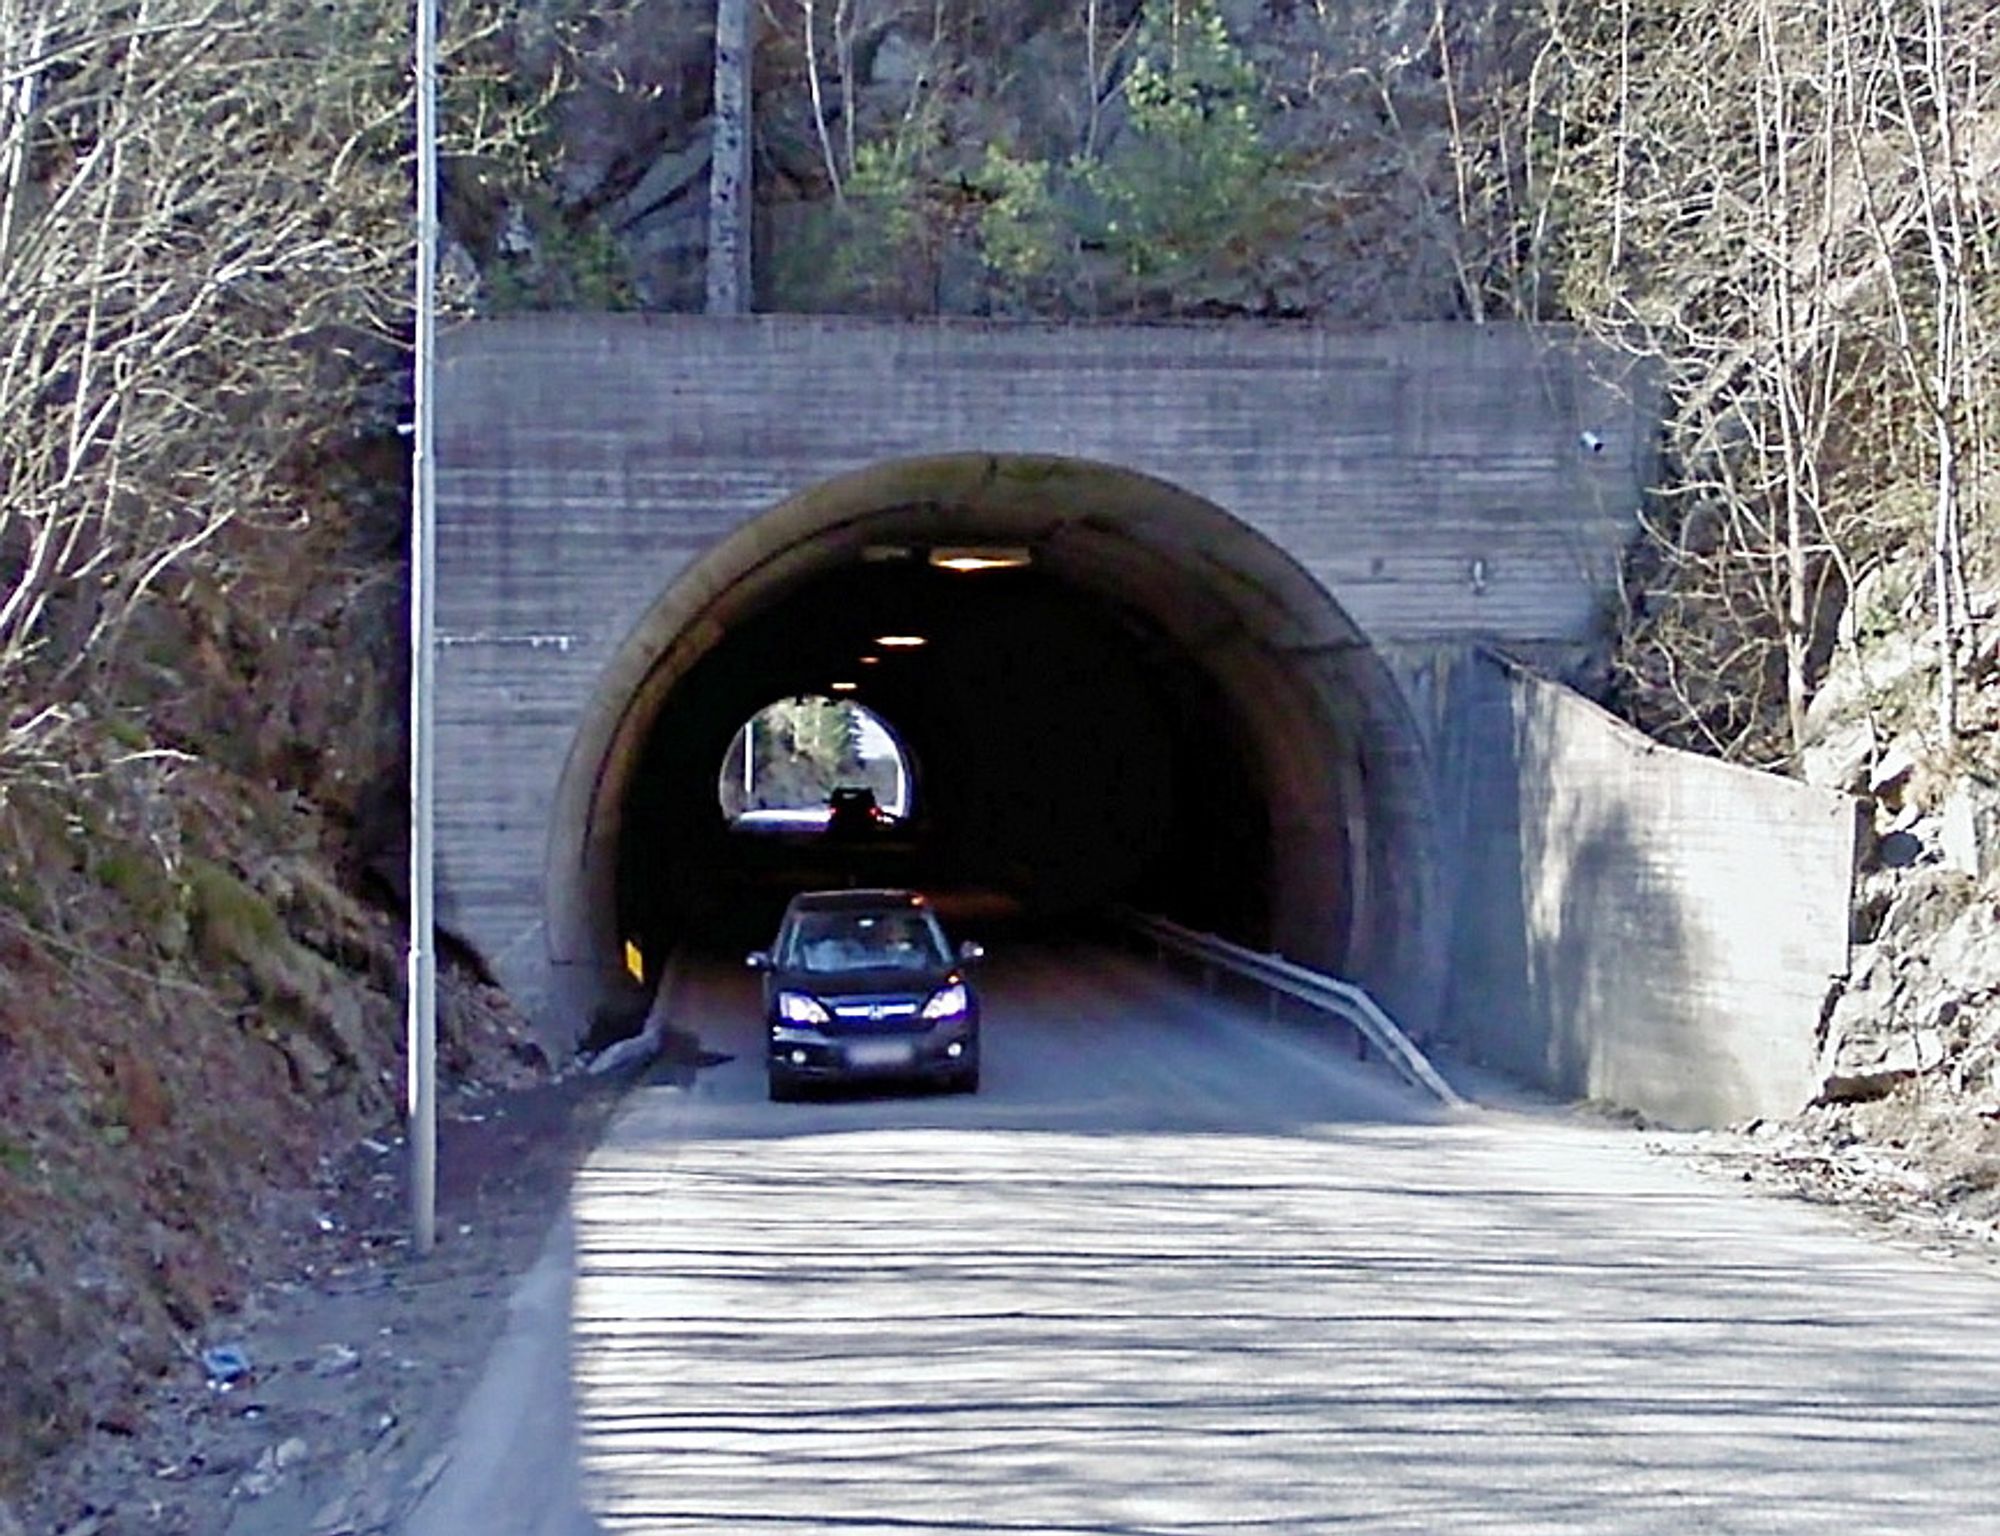 Denne tunnelen tilfredsstiller ikke tidens krav. En parallell tunnel er lyst om totalentreprise med 18. august som frist. (Foto: Google)